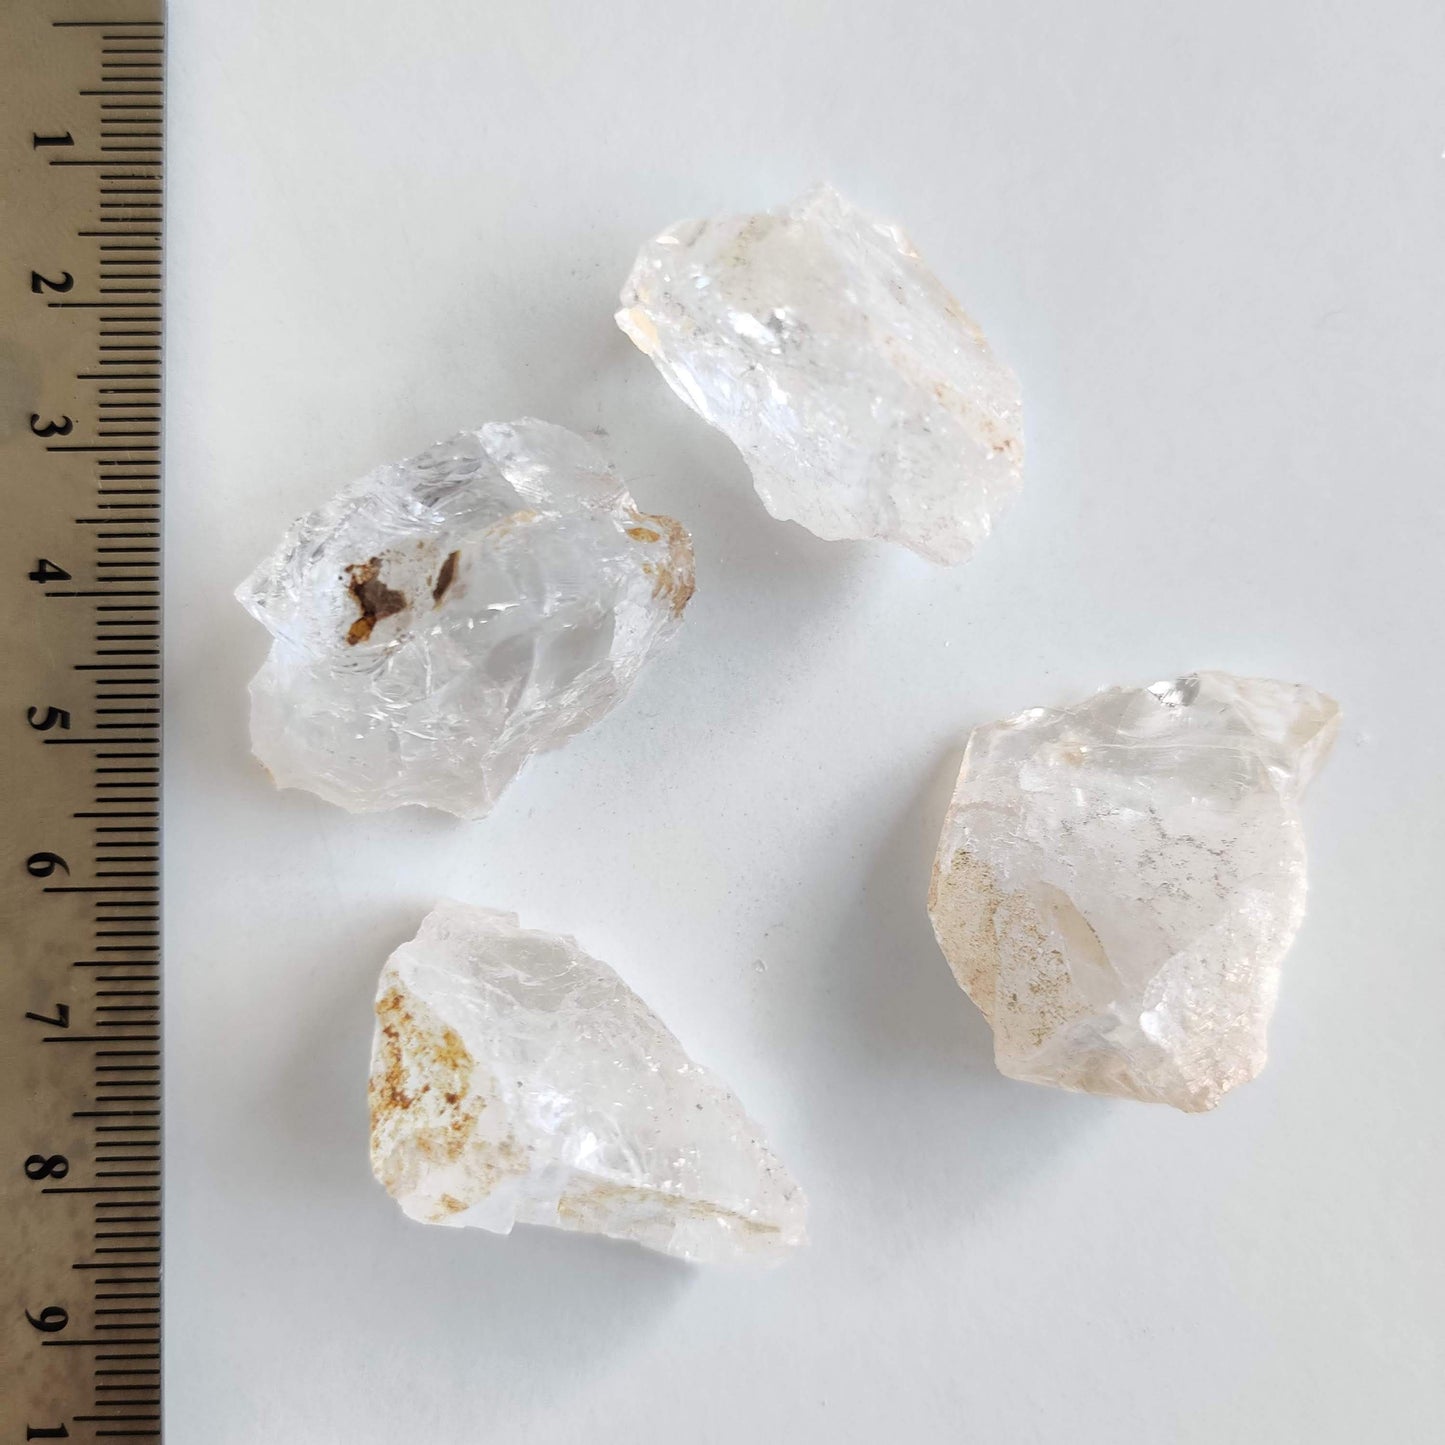 Clear Quartz Rough Crystal Piece (1-2cm) - Rivendell Shop